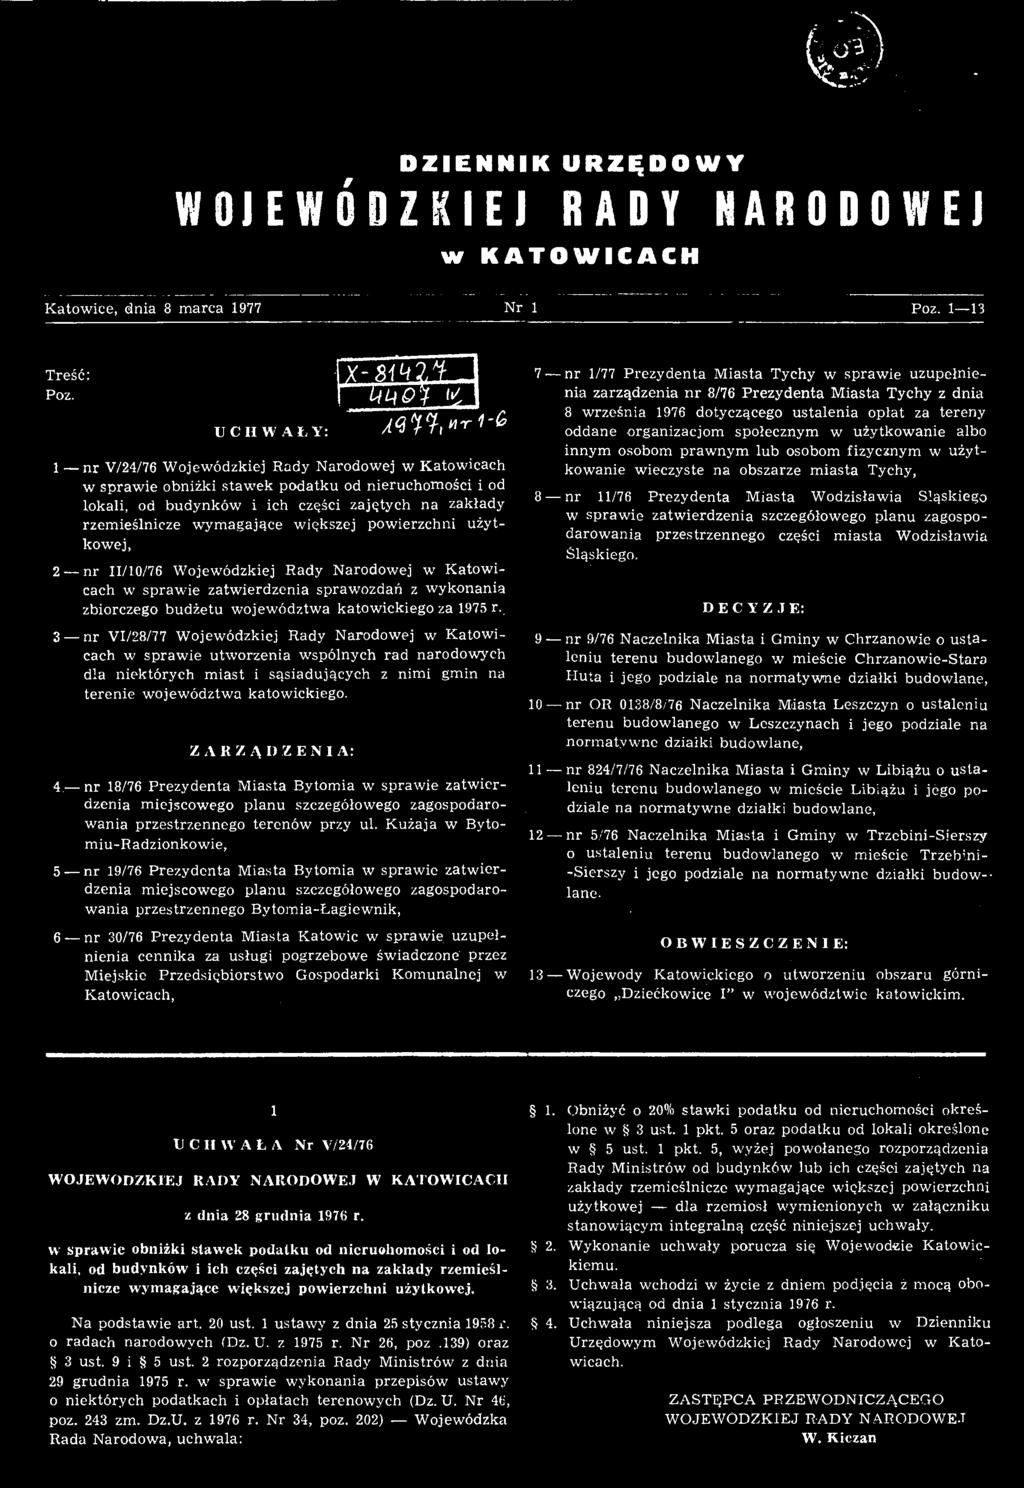 Z A R Z Ą I) Z E N I A: UMOV 4 nr 18/76 Prezydenta Miasta Bytomia w sprawie zatwierdzenia miejscowego planu szczegółowego zagospodarowania przestrzennego terenów przy ul.